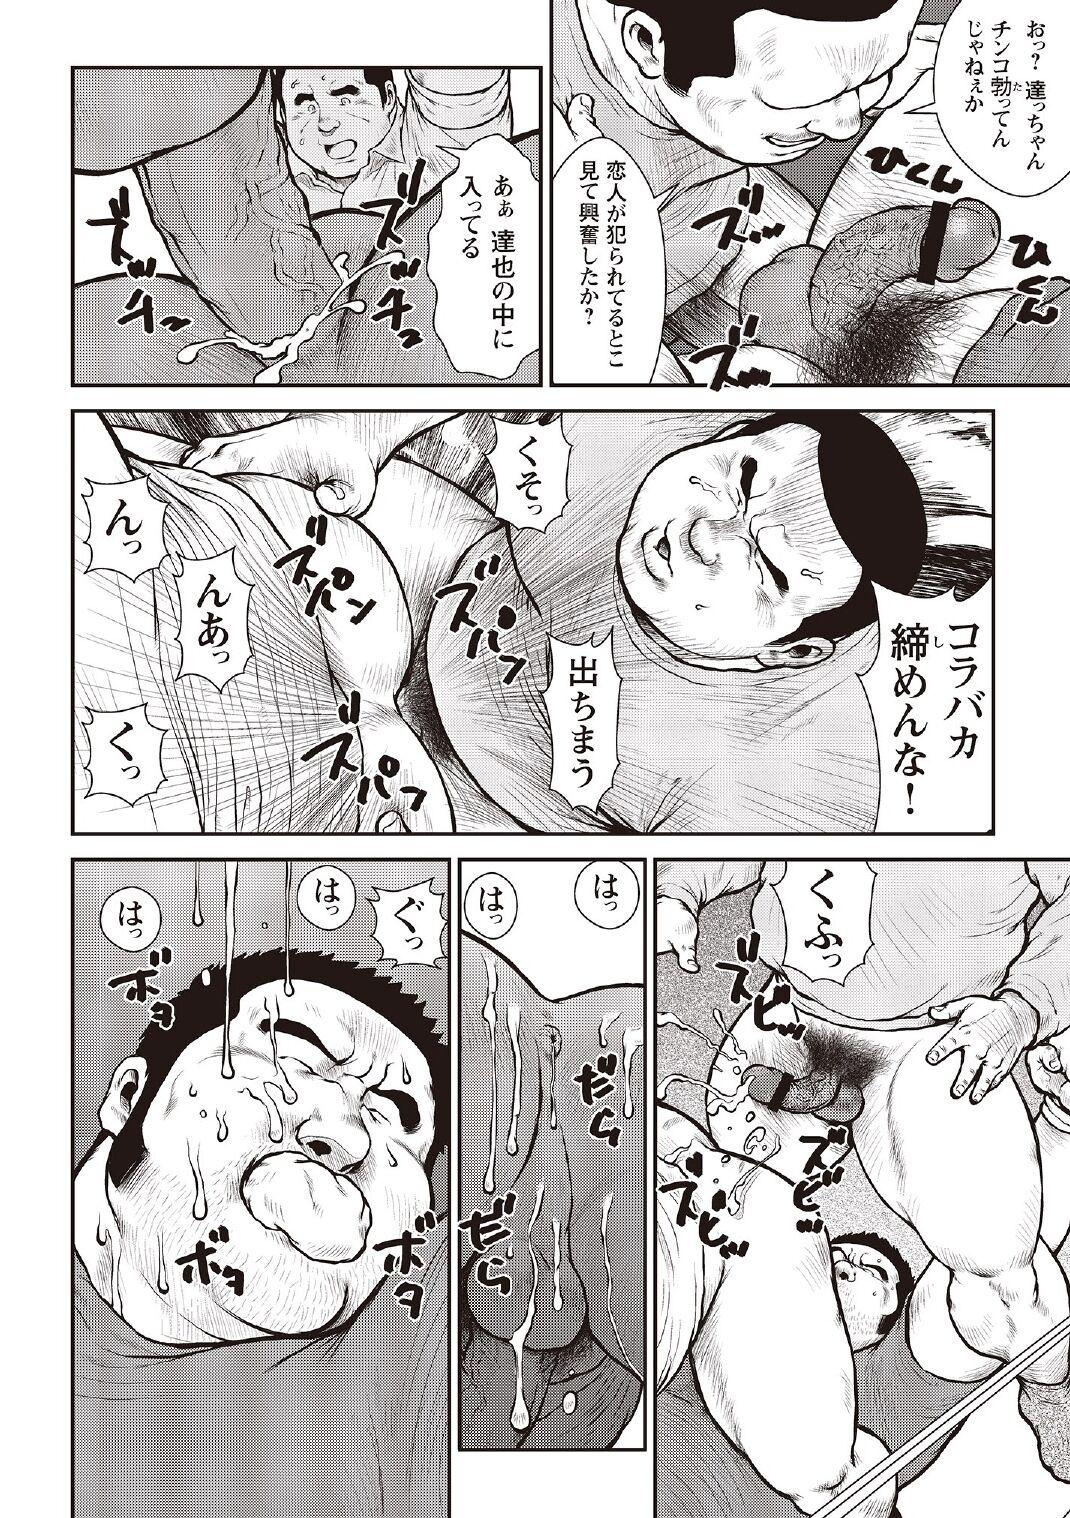 [Ebisubashi Seizou] Ebisubashi Seizou Tanpen Manga Shuu 2 Fuuun! Danshi Ryou [Bunsatsuban] PART 3 Bousou Hantou Taifuu Zensen Ch. 3 ~ Ch. 5 [Digital] 47